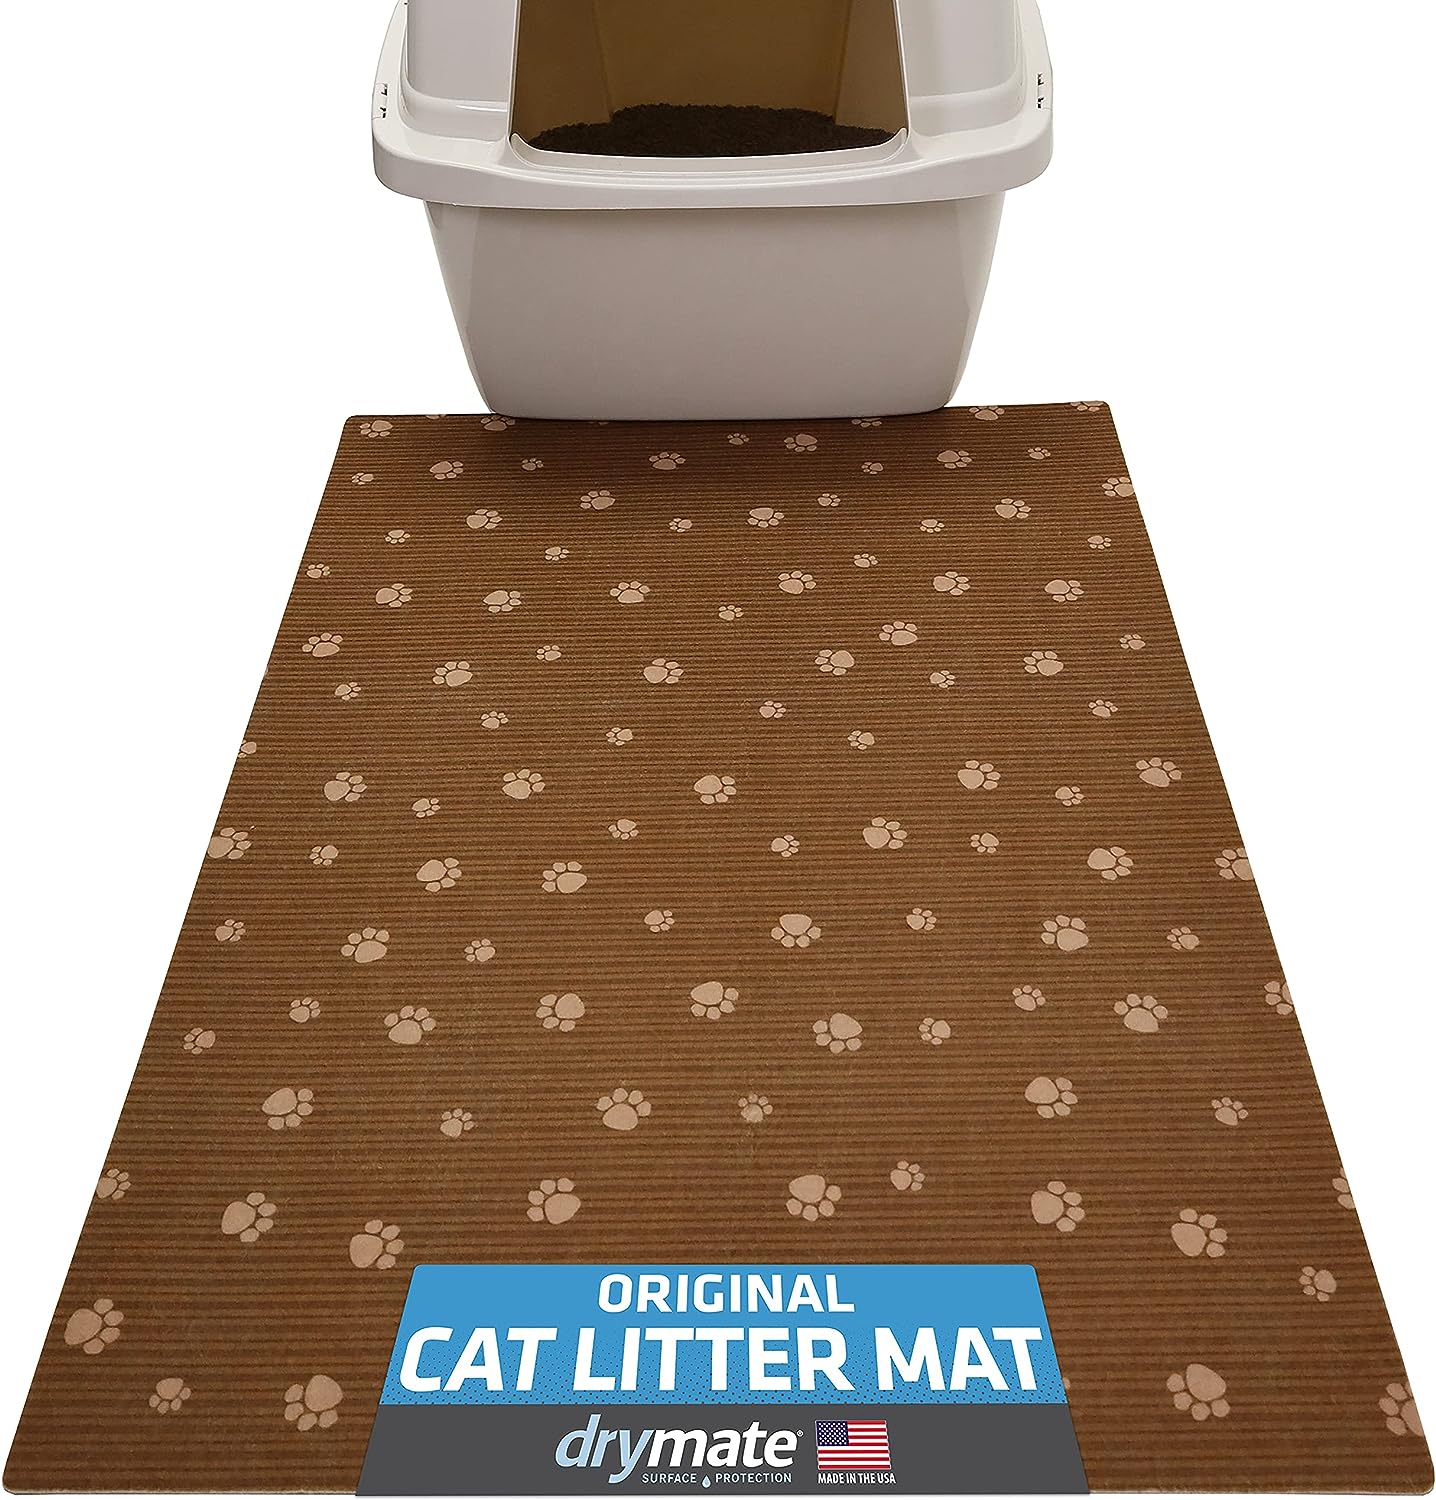 Cat Litter Mat - Made in USA